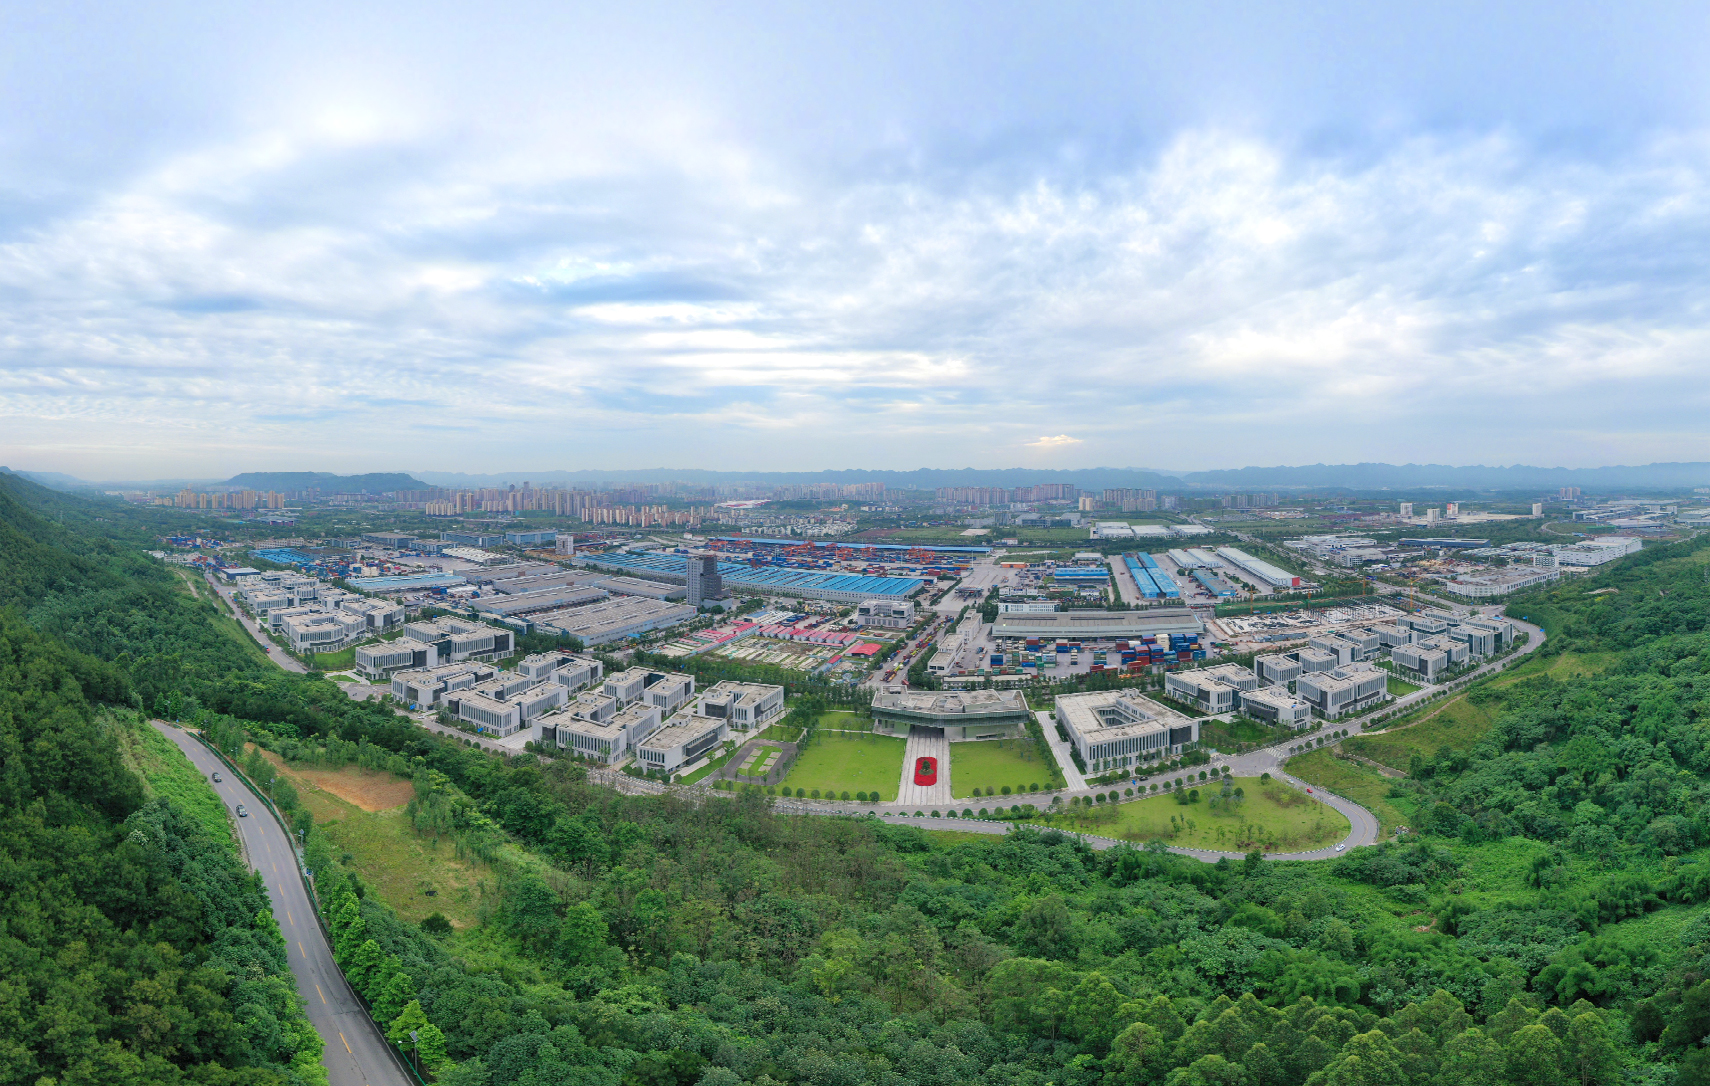 重庆国际物流枢纽园区:共筑未来之城 打造双城经济圈高品质生活宜居地